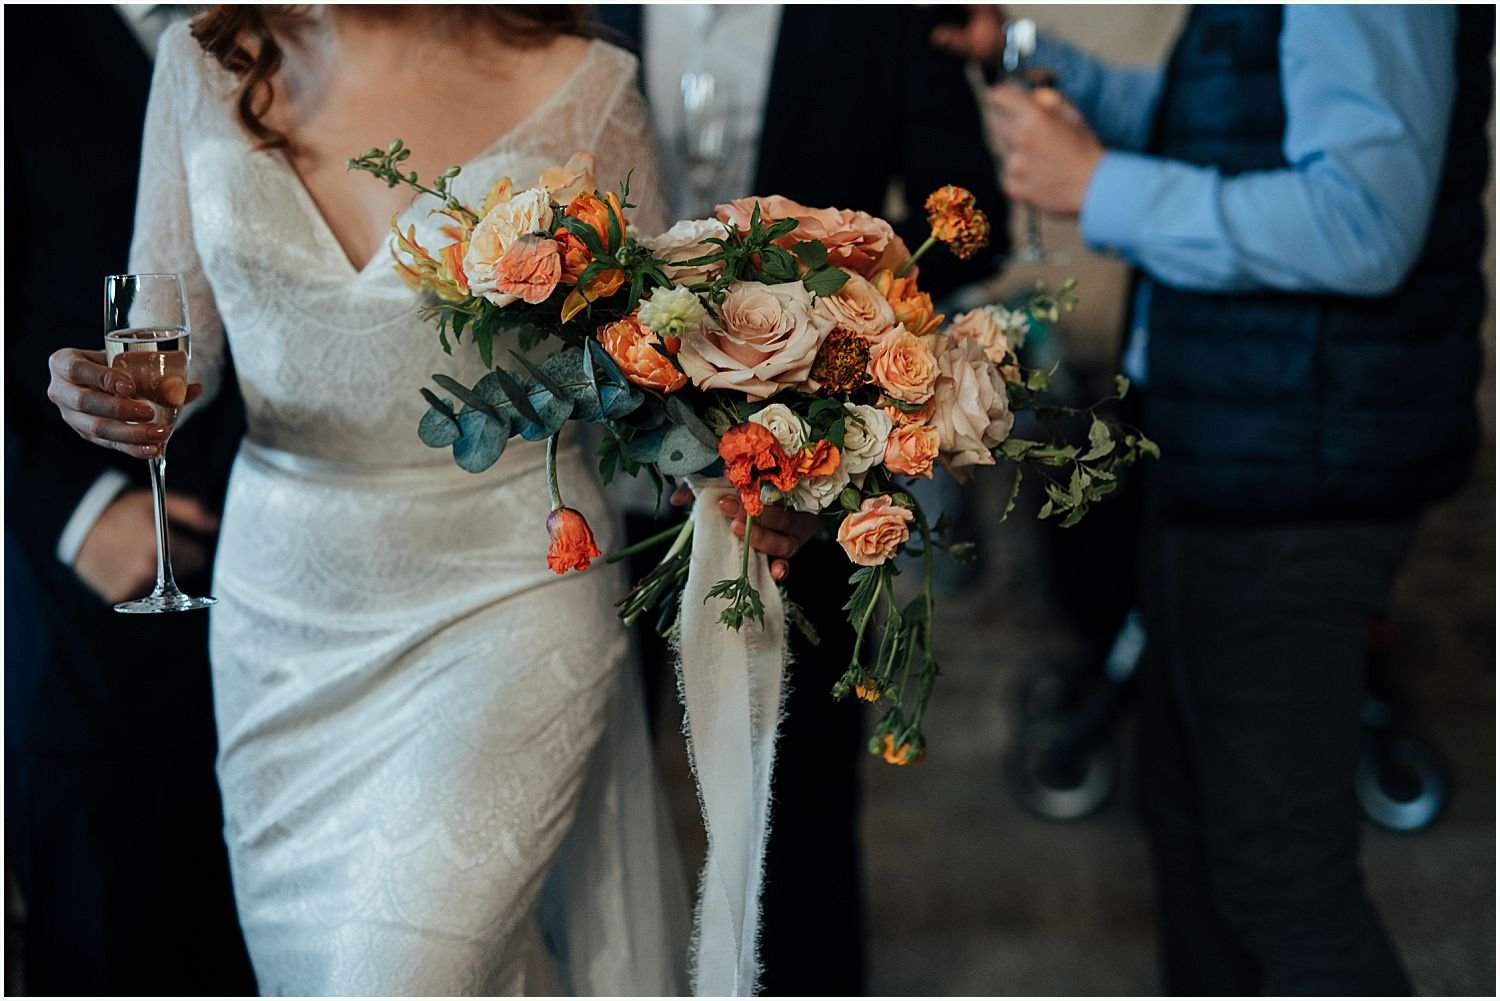 Wedding flowers by Bloom East